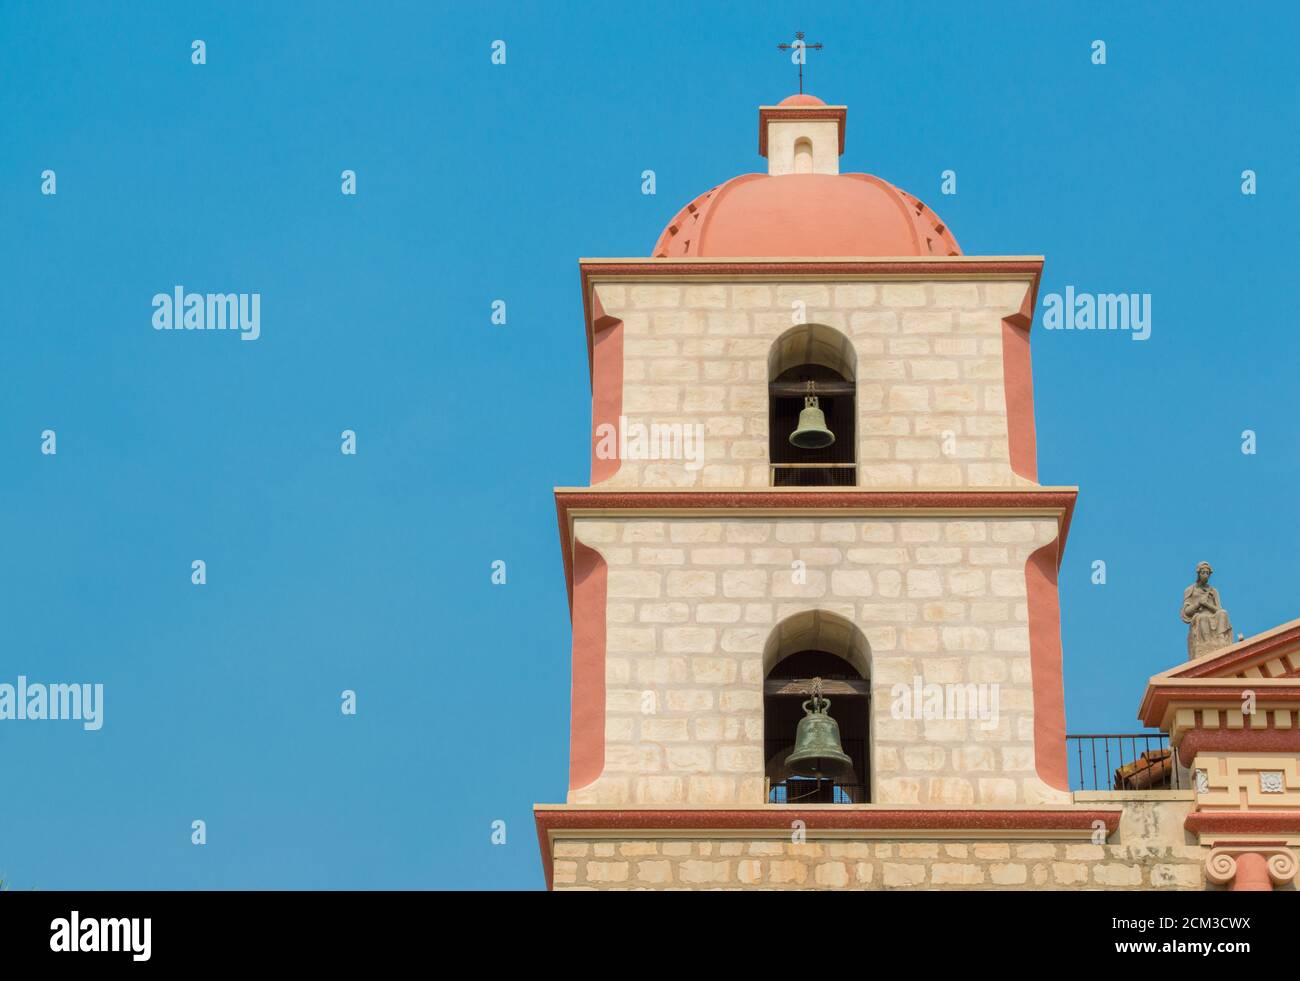 Clocher de style espagnol à la mission historique de Santa Barbara En Californie, sous un ciel bleu vif avec espace de copie Banque D'Images